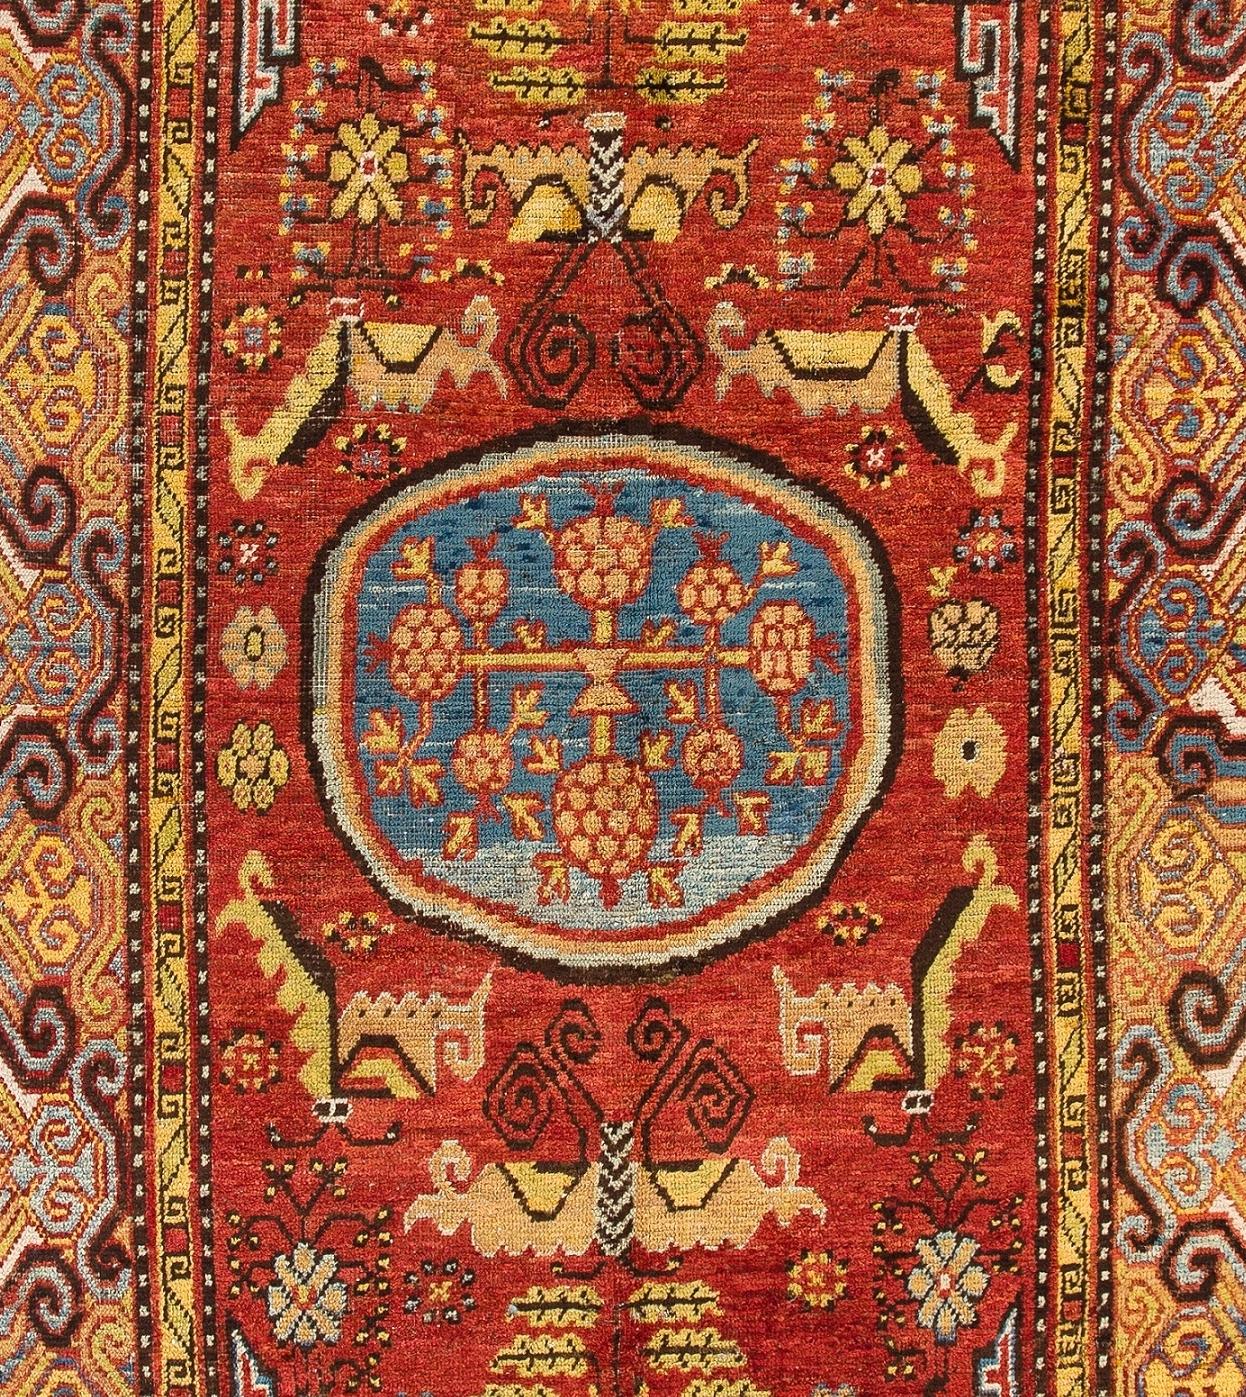 Exceptionnel tapis antique Khotan du Turkestan oriental/de l'ouest de la Chine. Il s'agit de l'un des meilleurs et des plus anciens exemples d'œuvre d'art tissée dans cet ancien centre de tissage. Bon état de conservation. 
Taille : 5.6 x 10.3 ft.